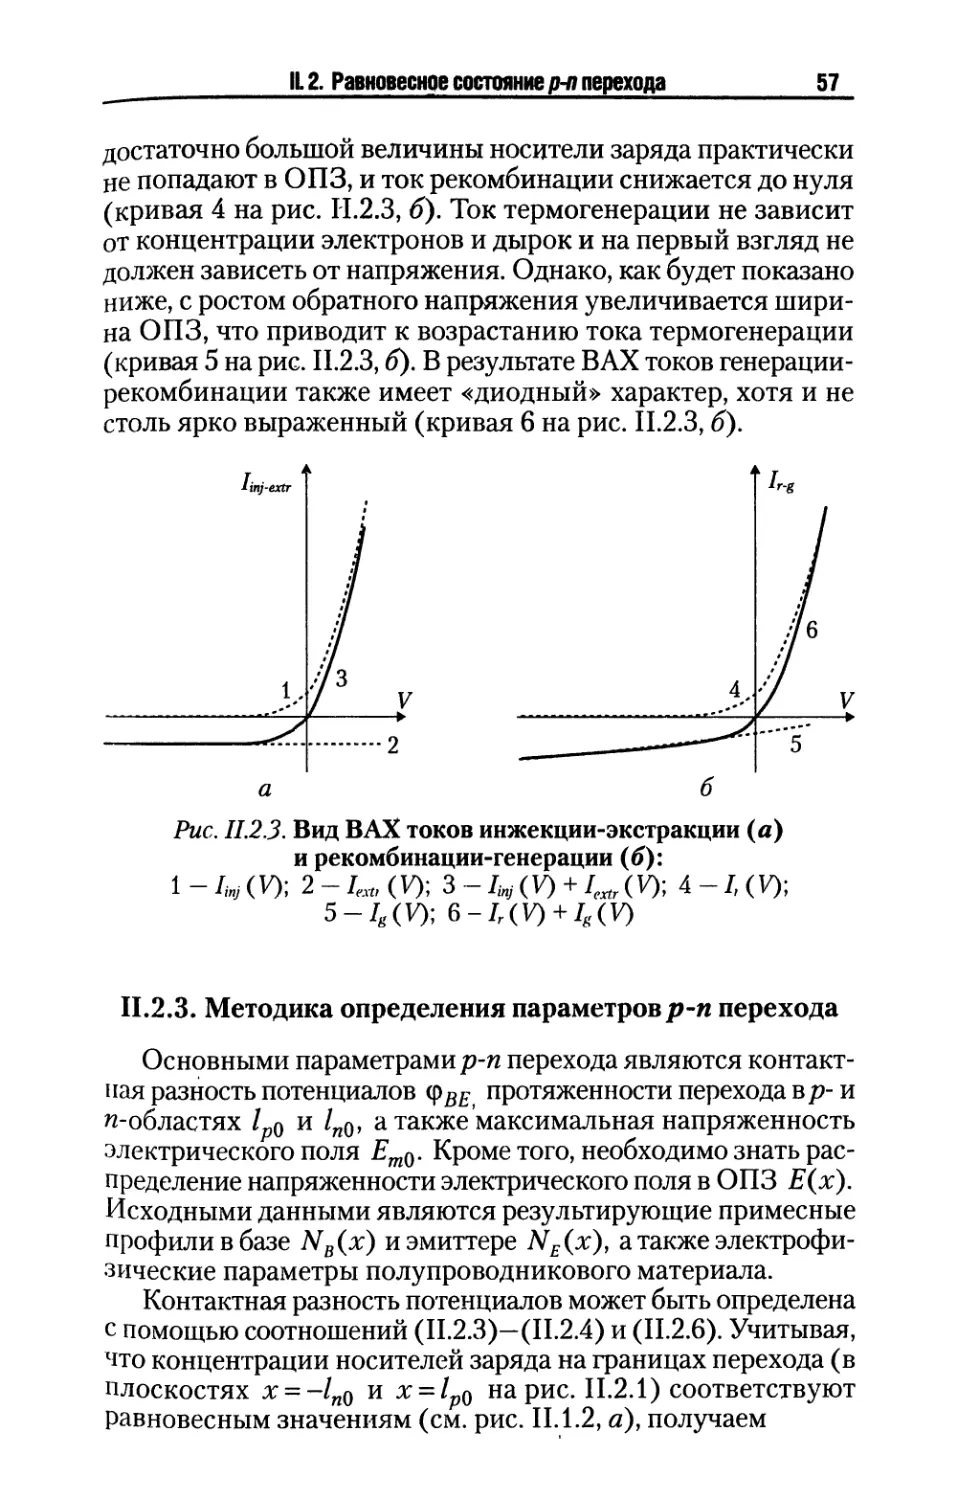 II.2.3. Методика определения параметров p-n перехода